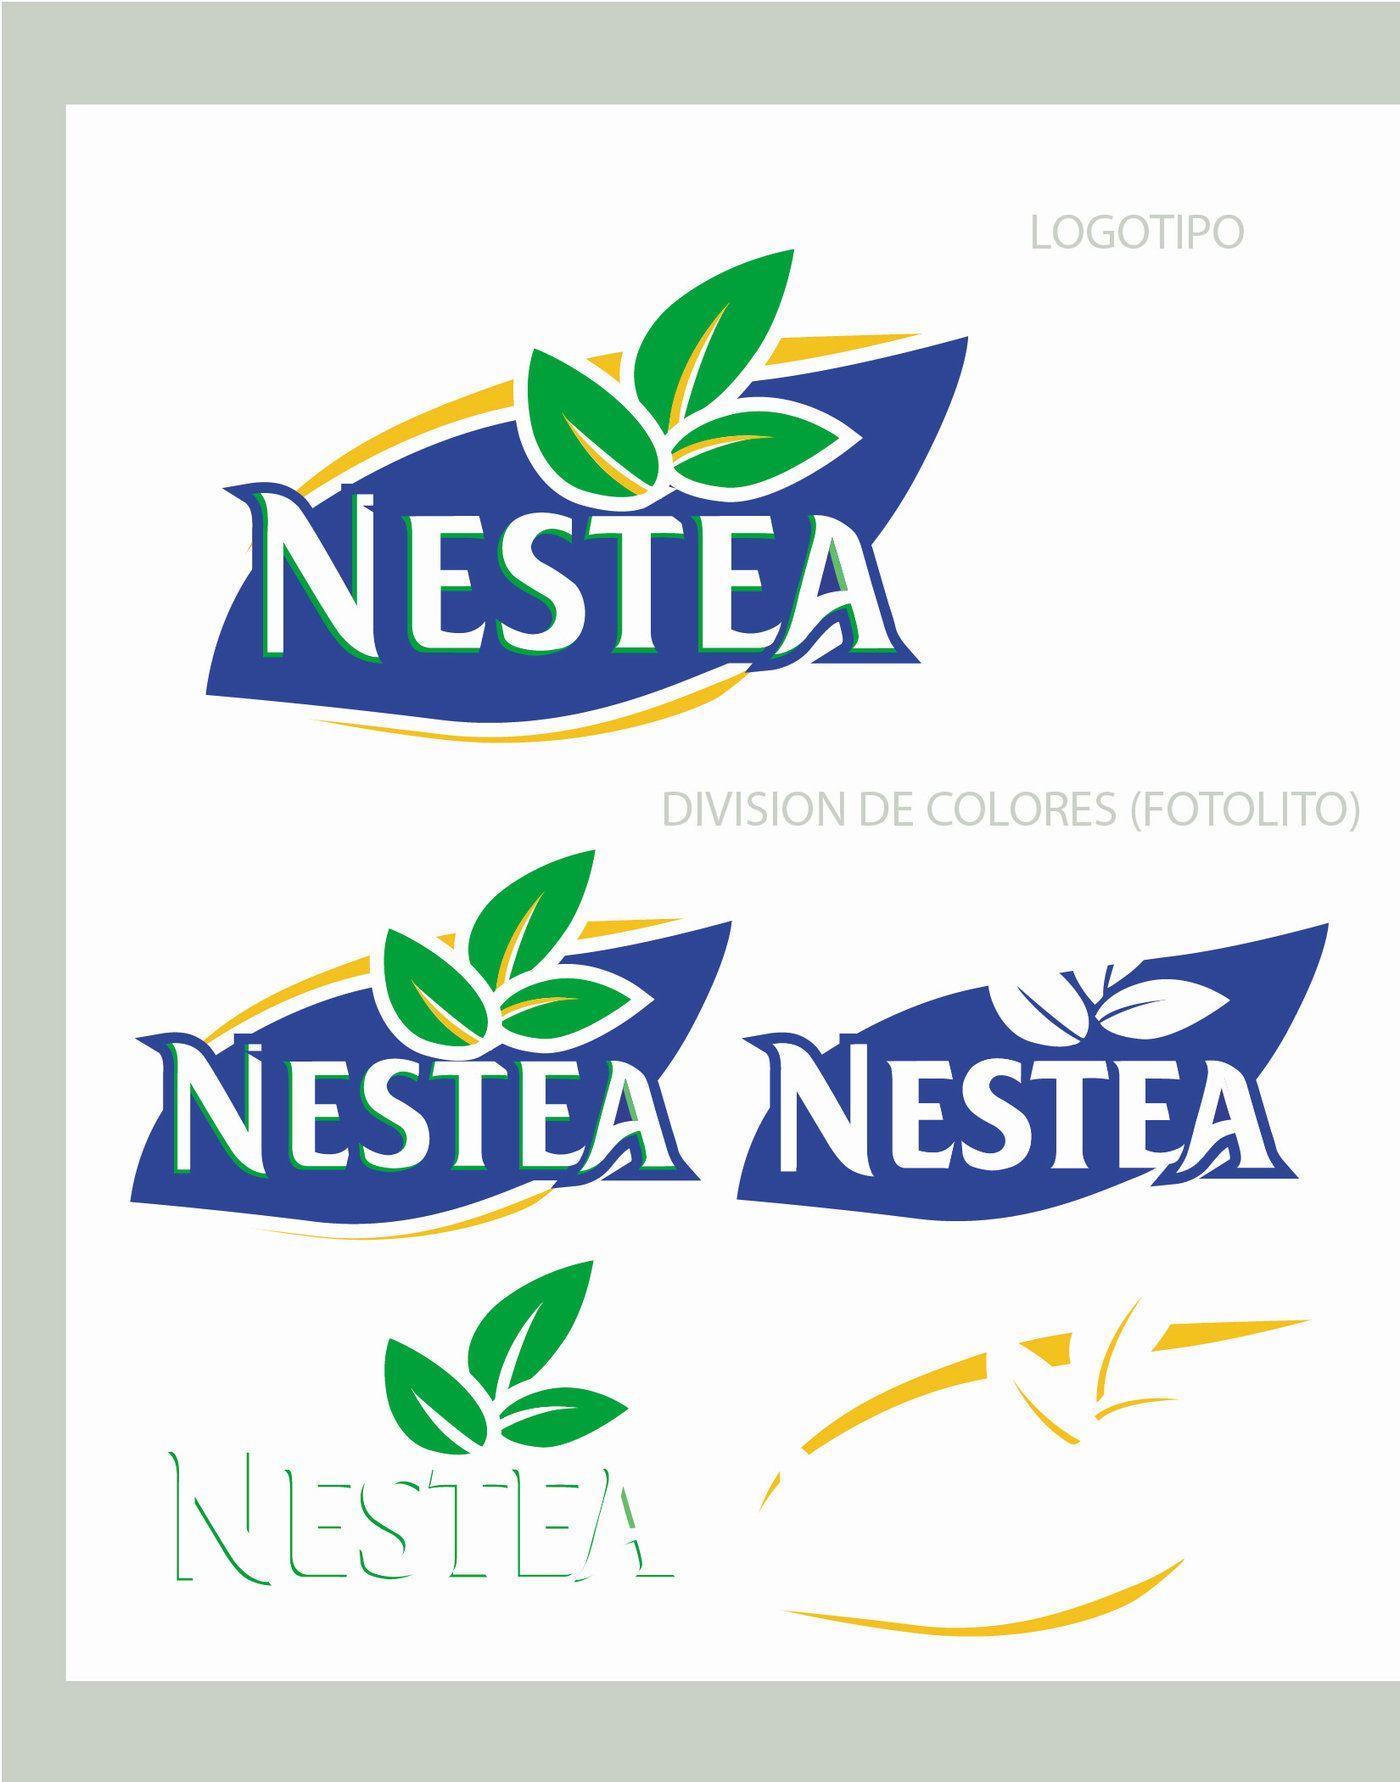 Neastea Logo - GRAPHICS Nestea Logo Modifications by Mariana Farinas at Coroflot.com